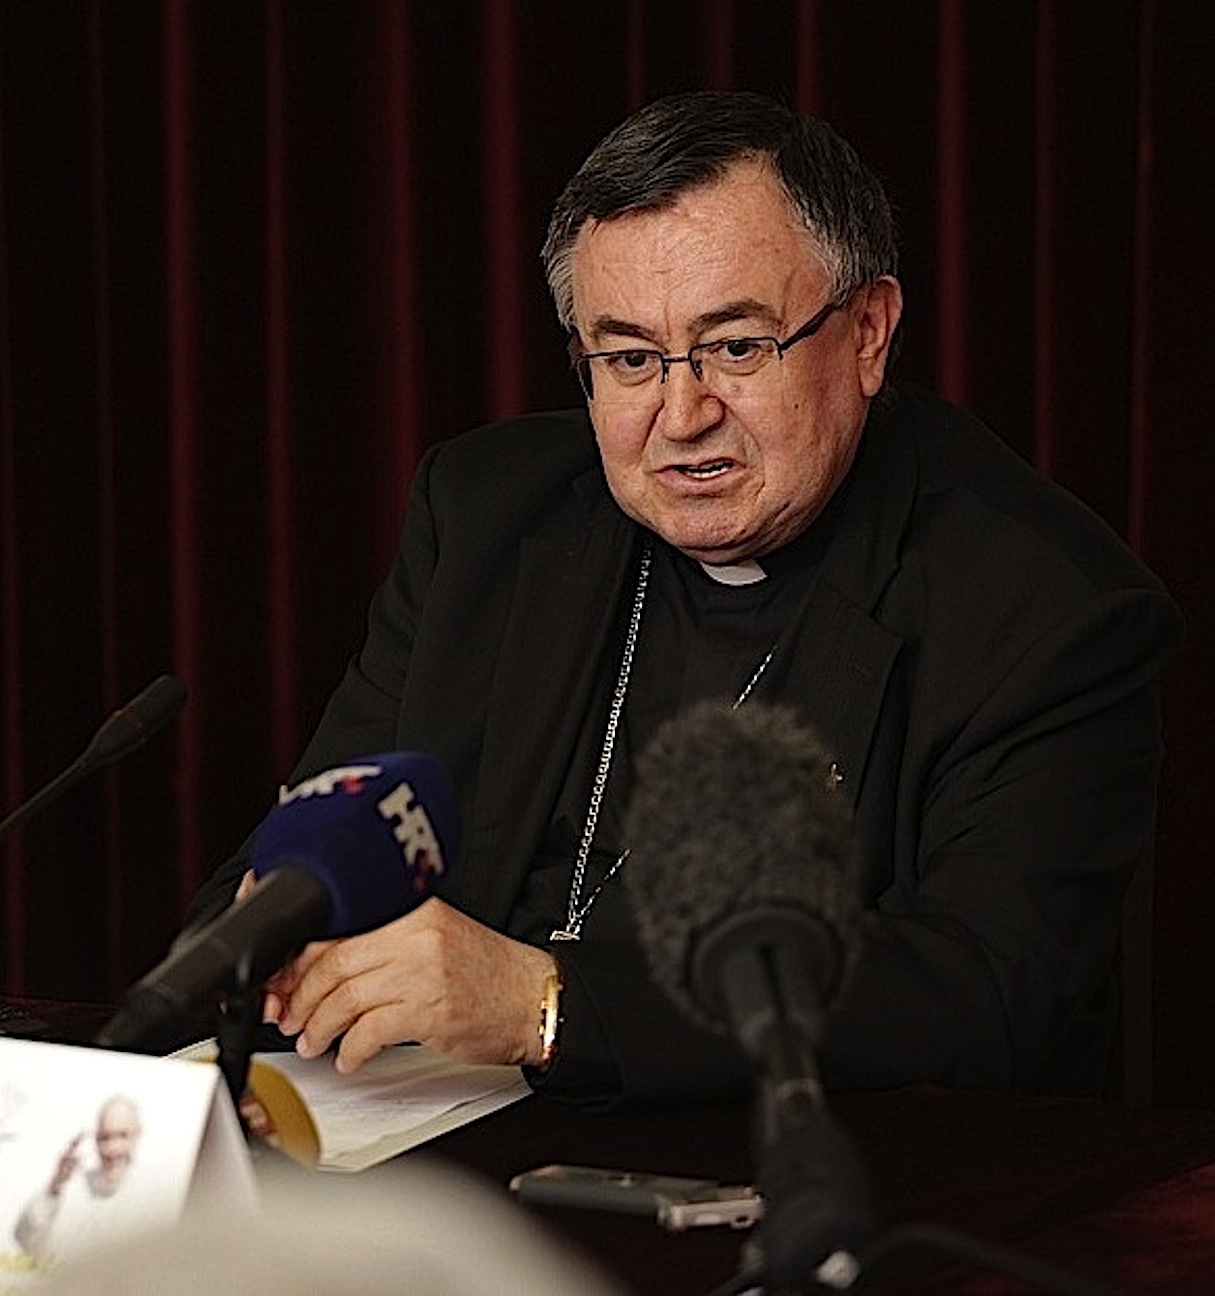 Cardinal Vinko Puljić presenting Pope's visit to Sarajevo and Bosnia and Herzegovina